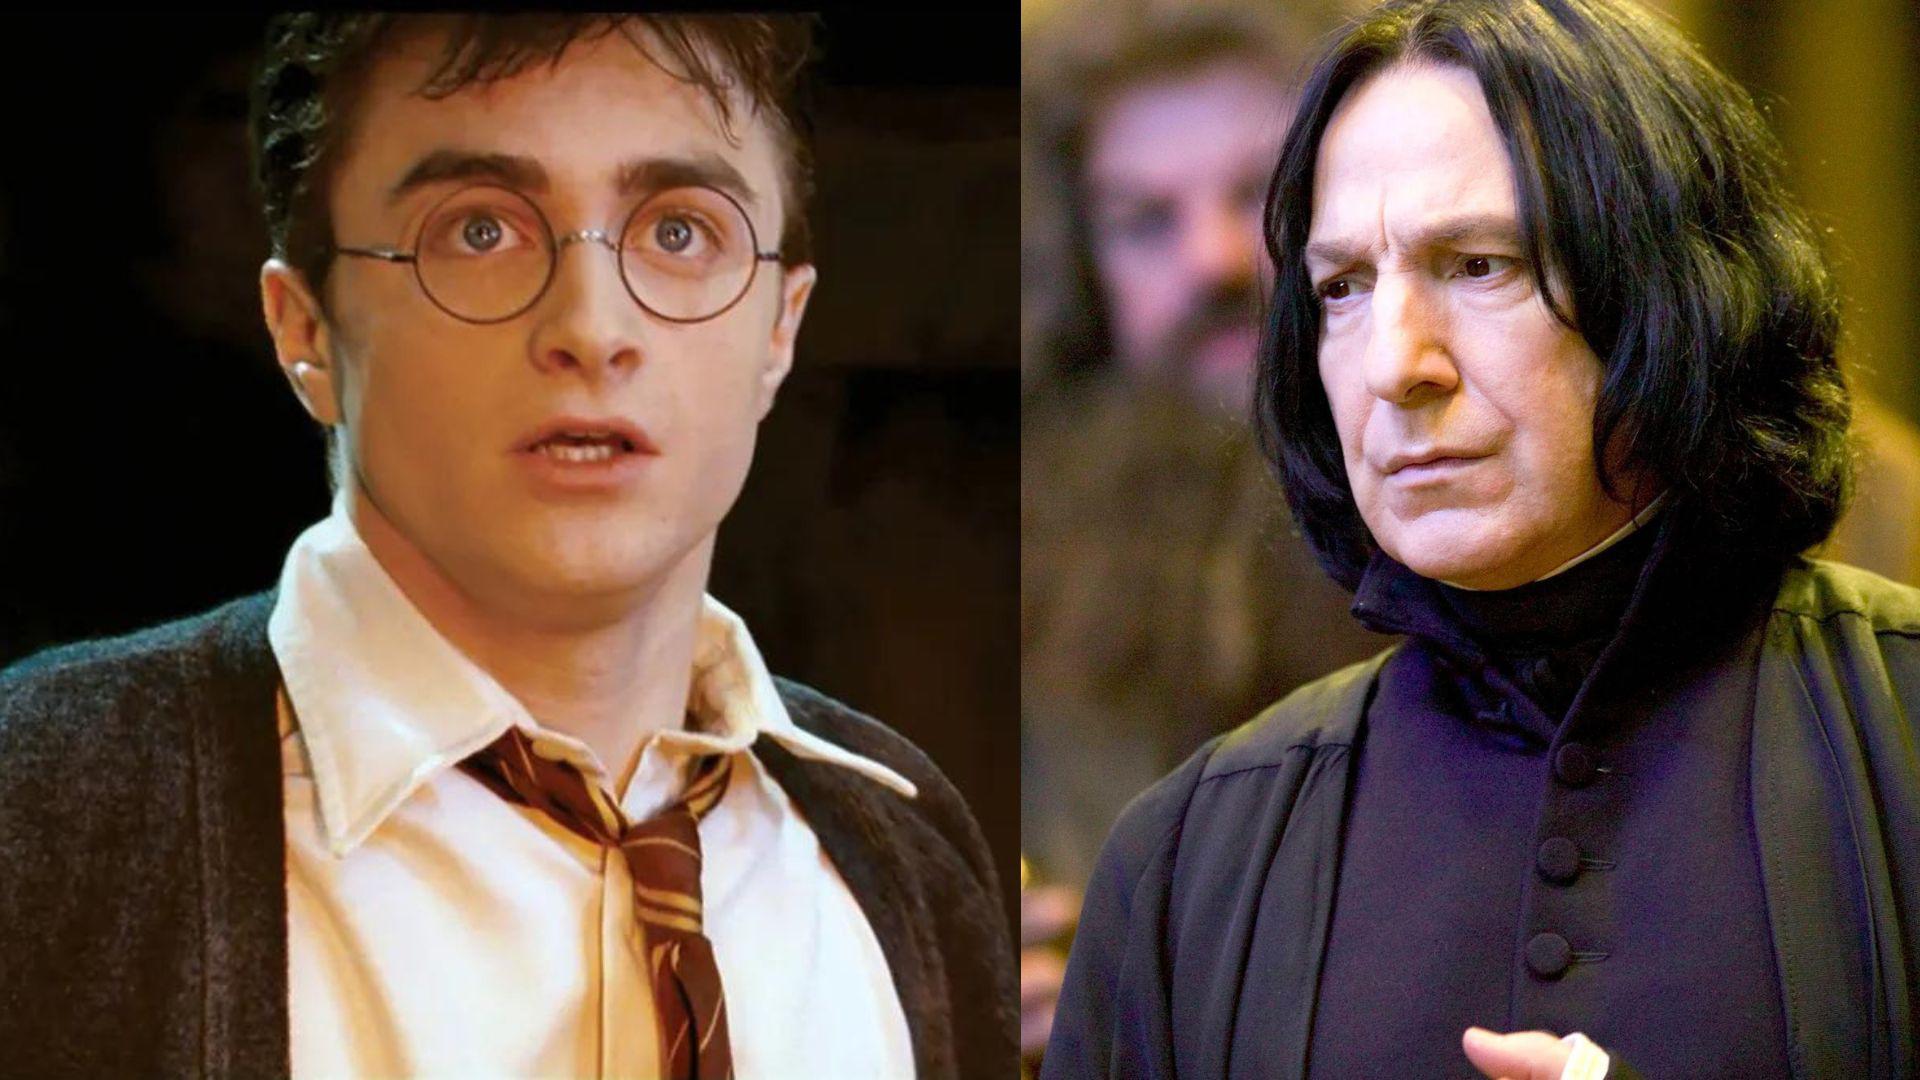 Daniel Radcliffe confiesa haberse sentido ‘aterrorizado e intimidado’ por Alan Rickman en el set de Harry Potter. Noticias en tiempo real